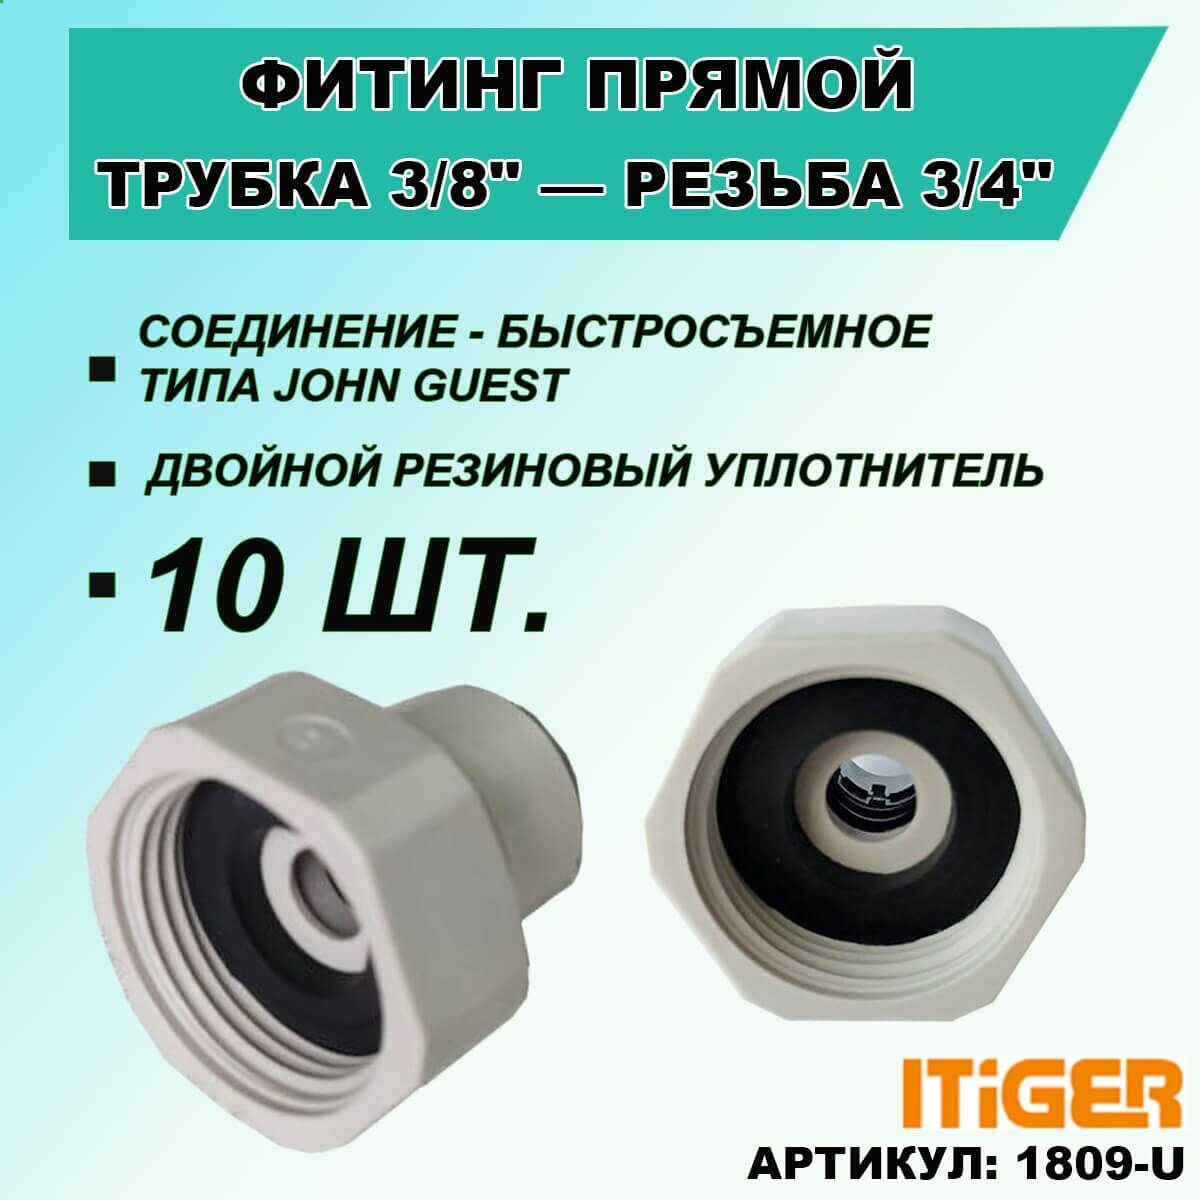 10 шт. Фитинг прямой iTiGer типа John Guest (JG) для фильтра воды, трубка 3/8" - внутренняя резьба 3/4"